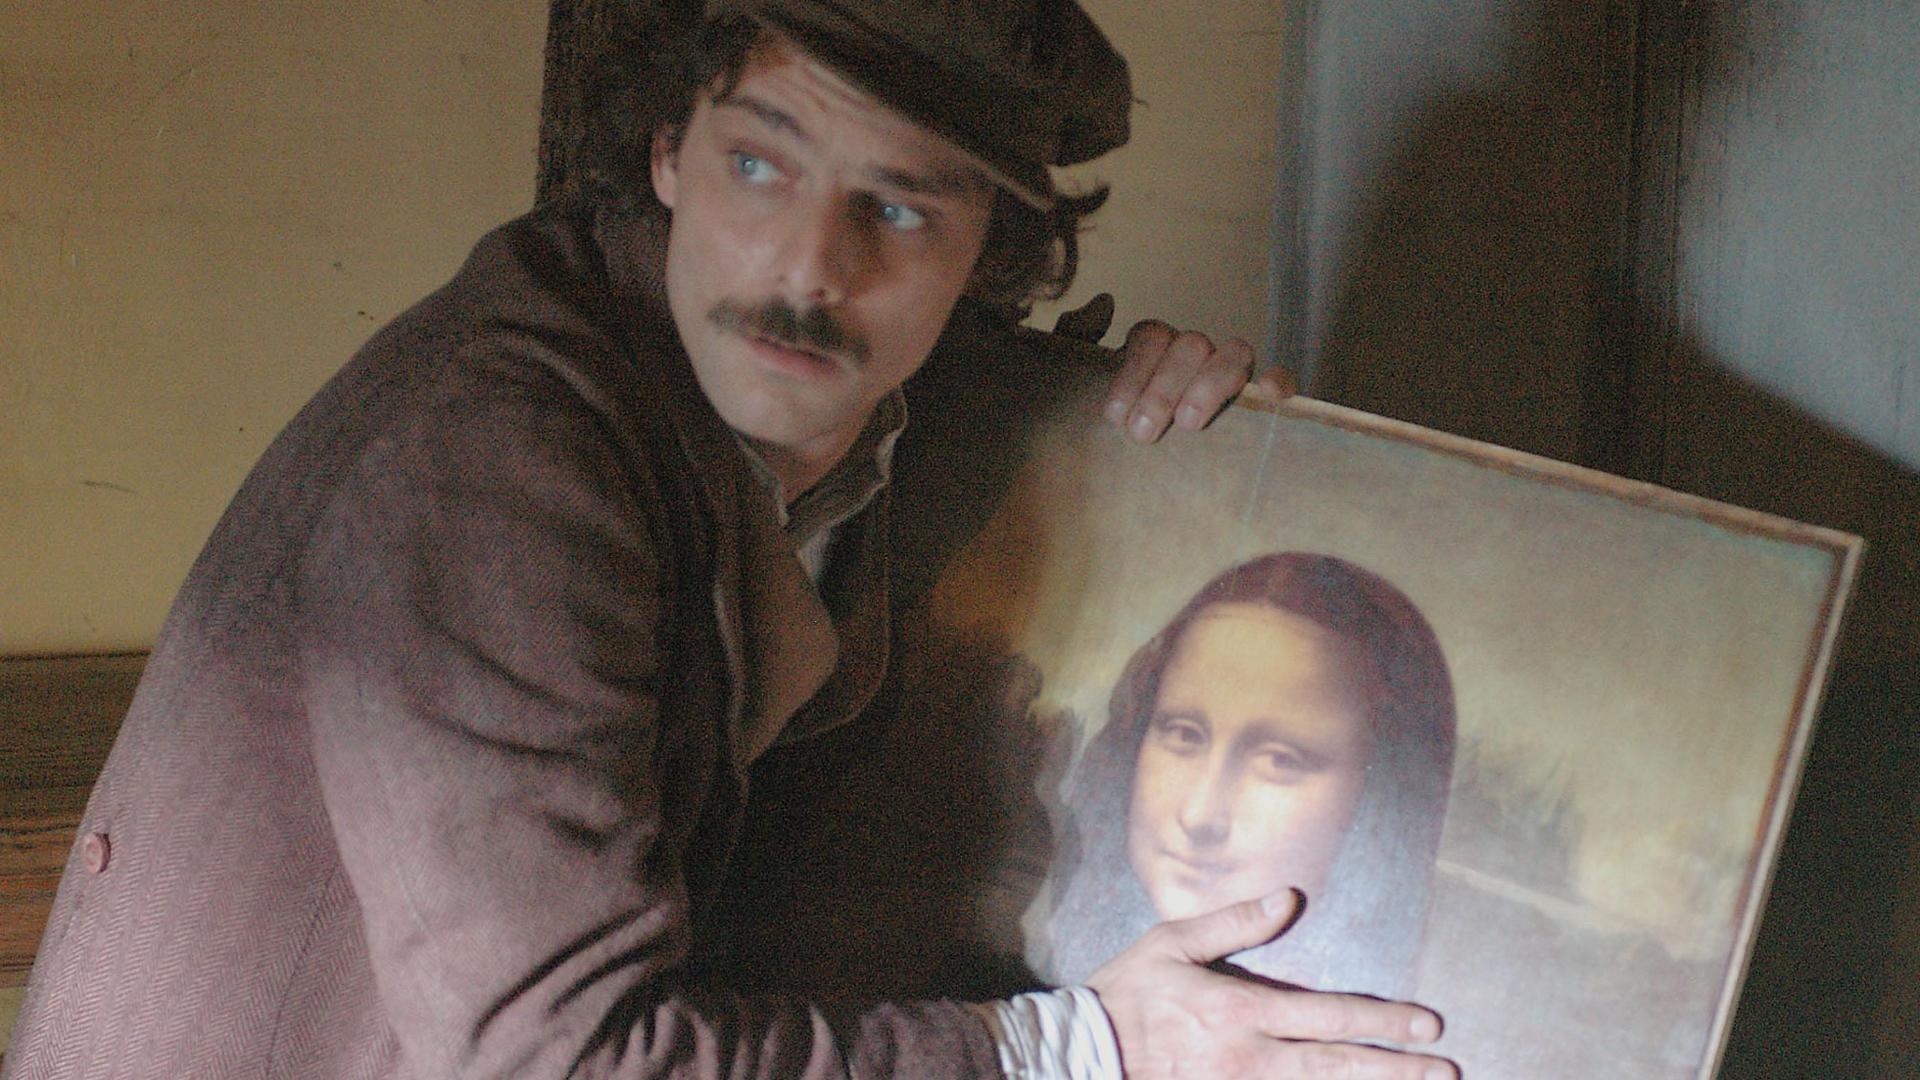 A mysterious association wants the Mona Lisa back “for the heirs of Leo<em></em>nardo da Vinci”